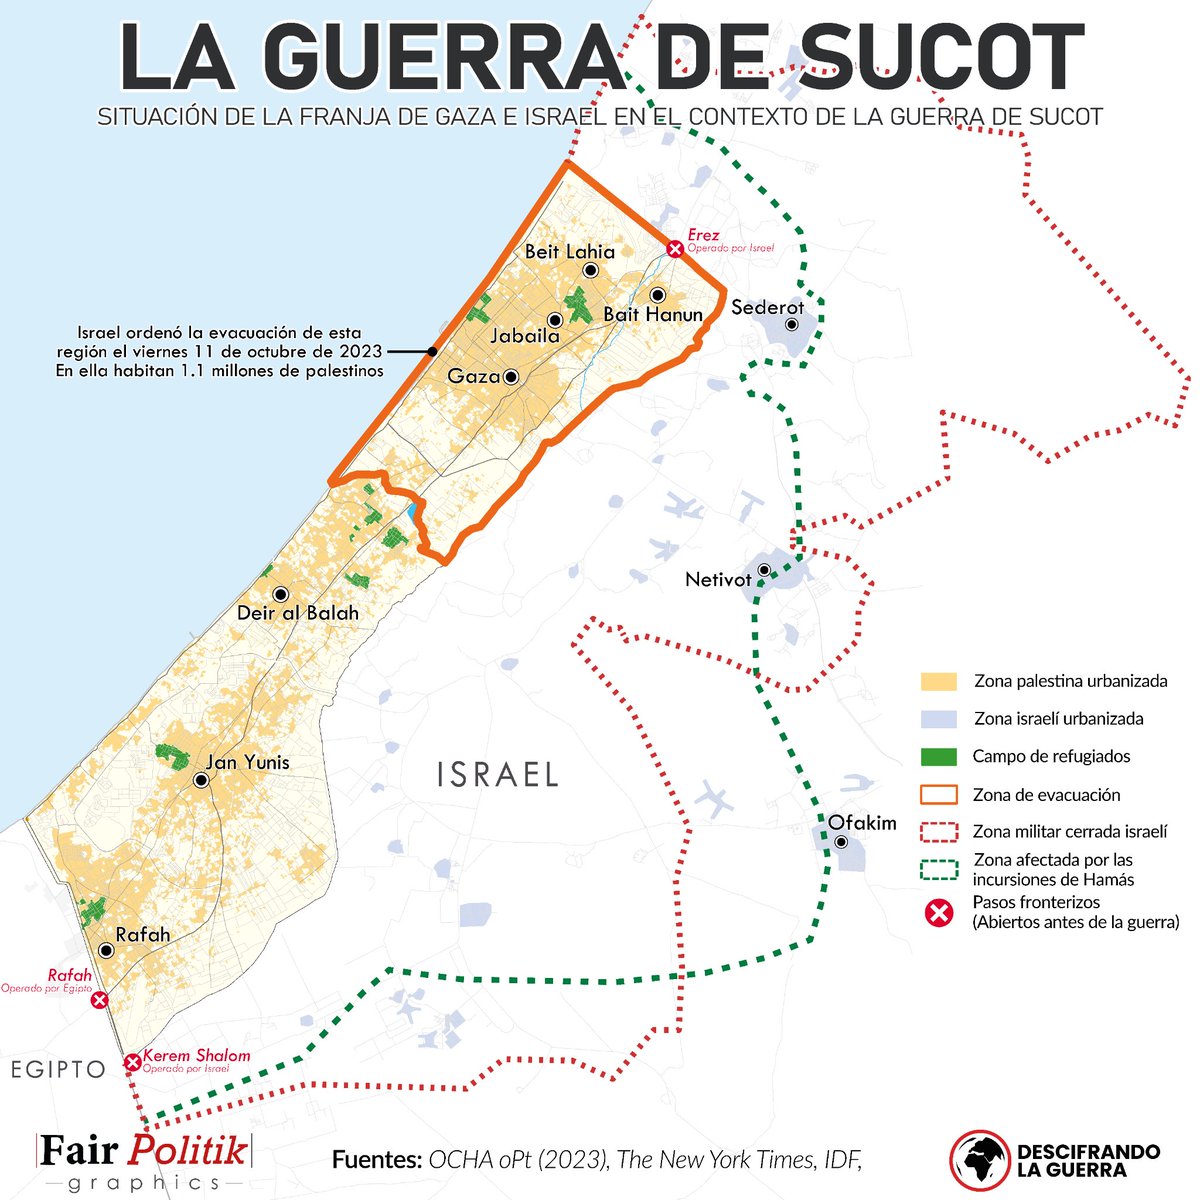 🇵🇸🇮🇱 Desde el 7 de Octubre con la incursión de Hamás comenzó una nueva guerra, la de Sucot. En este nuevo mapa podréis ver los detalles más importantes para entender la situación presente en Gaza. 

❓¿Cuál consideráis que será el desenlace de esta nueva guerra?